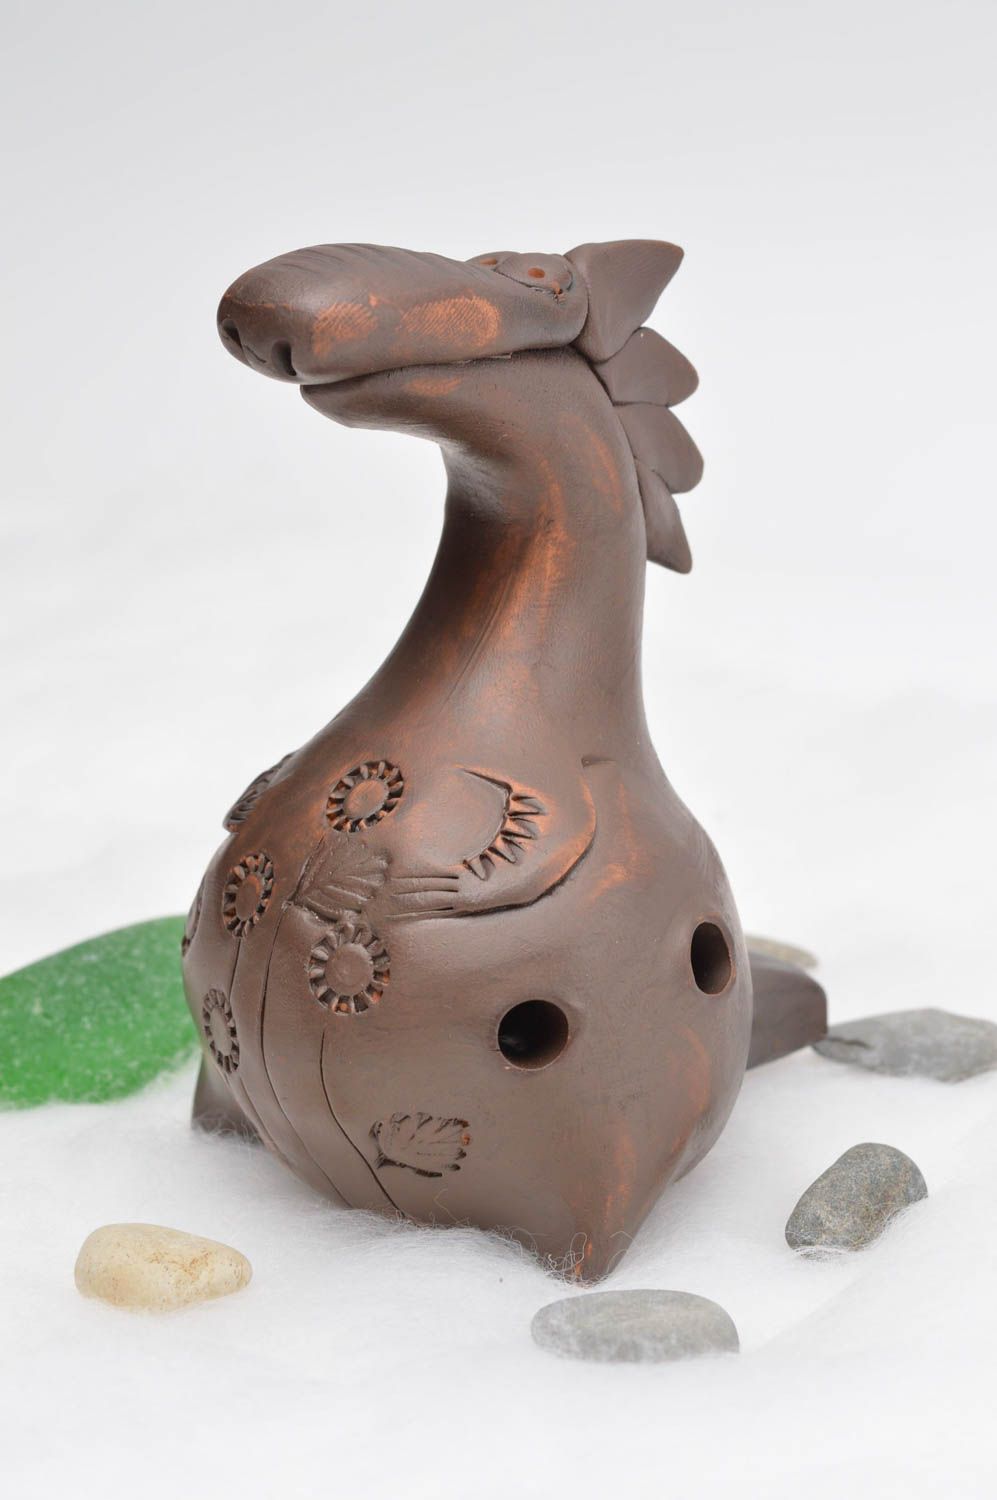 Глиняная свистулька статуэтка ручной работы фигурка животного свистулька Дракон фото 1